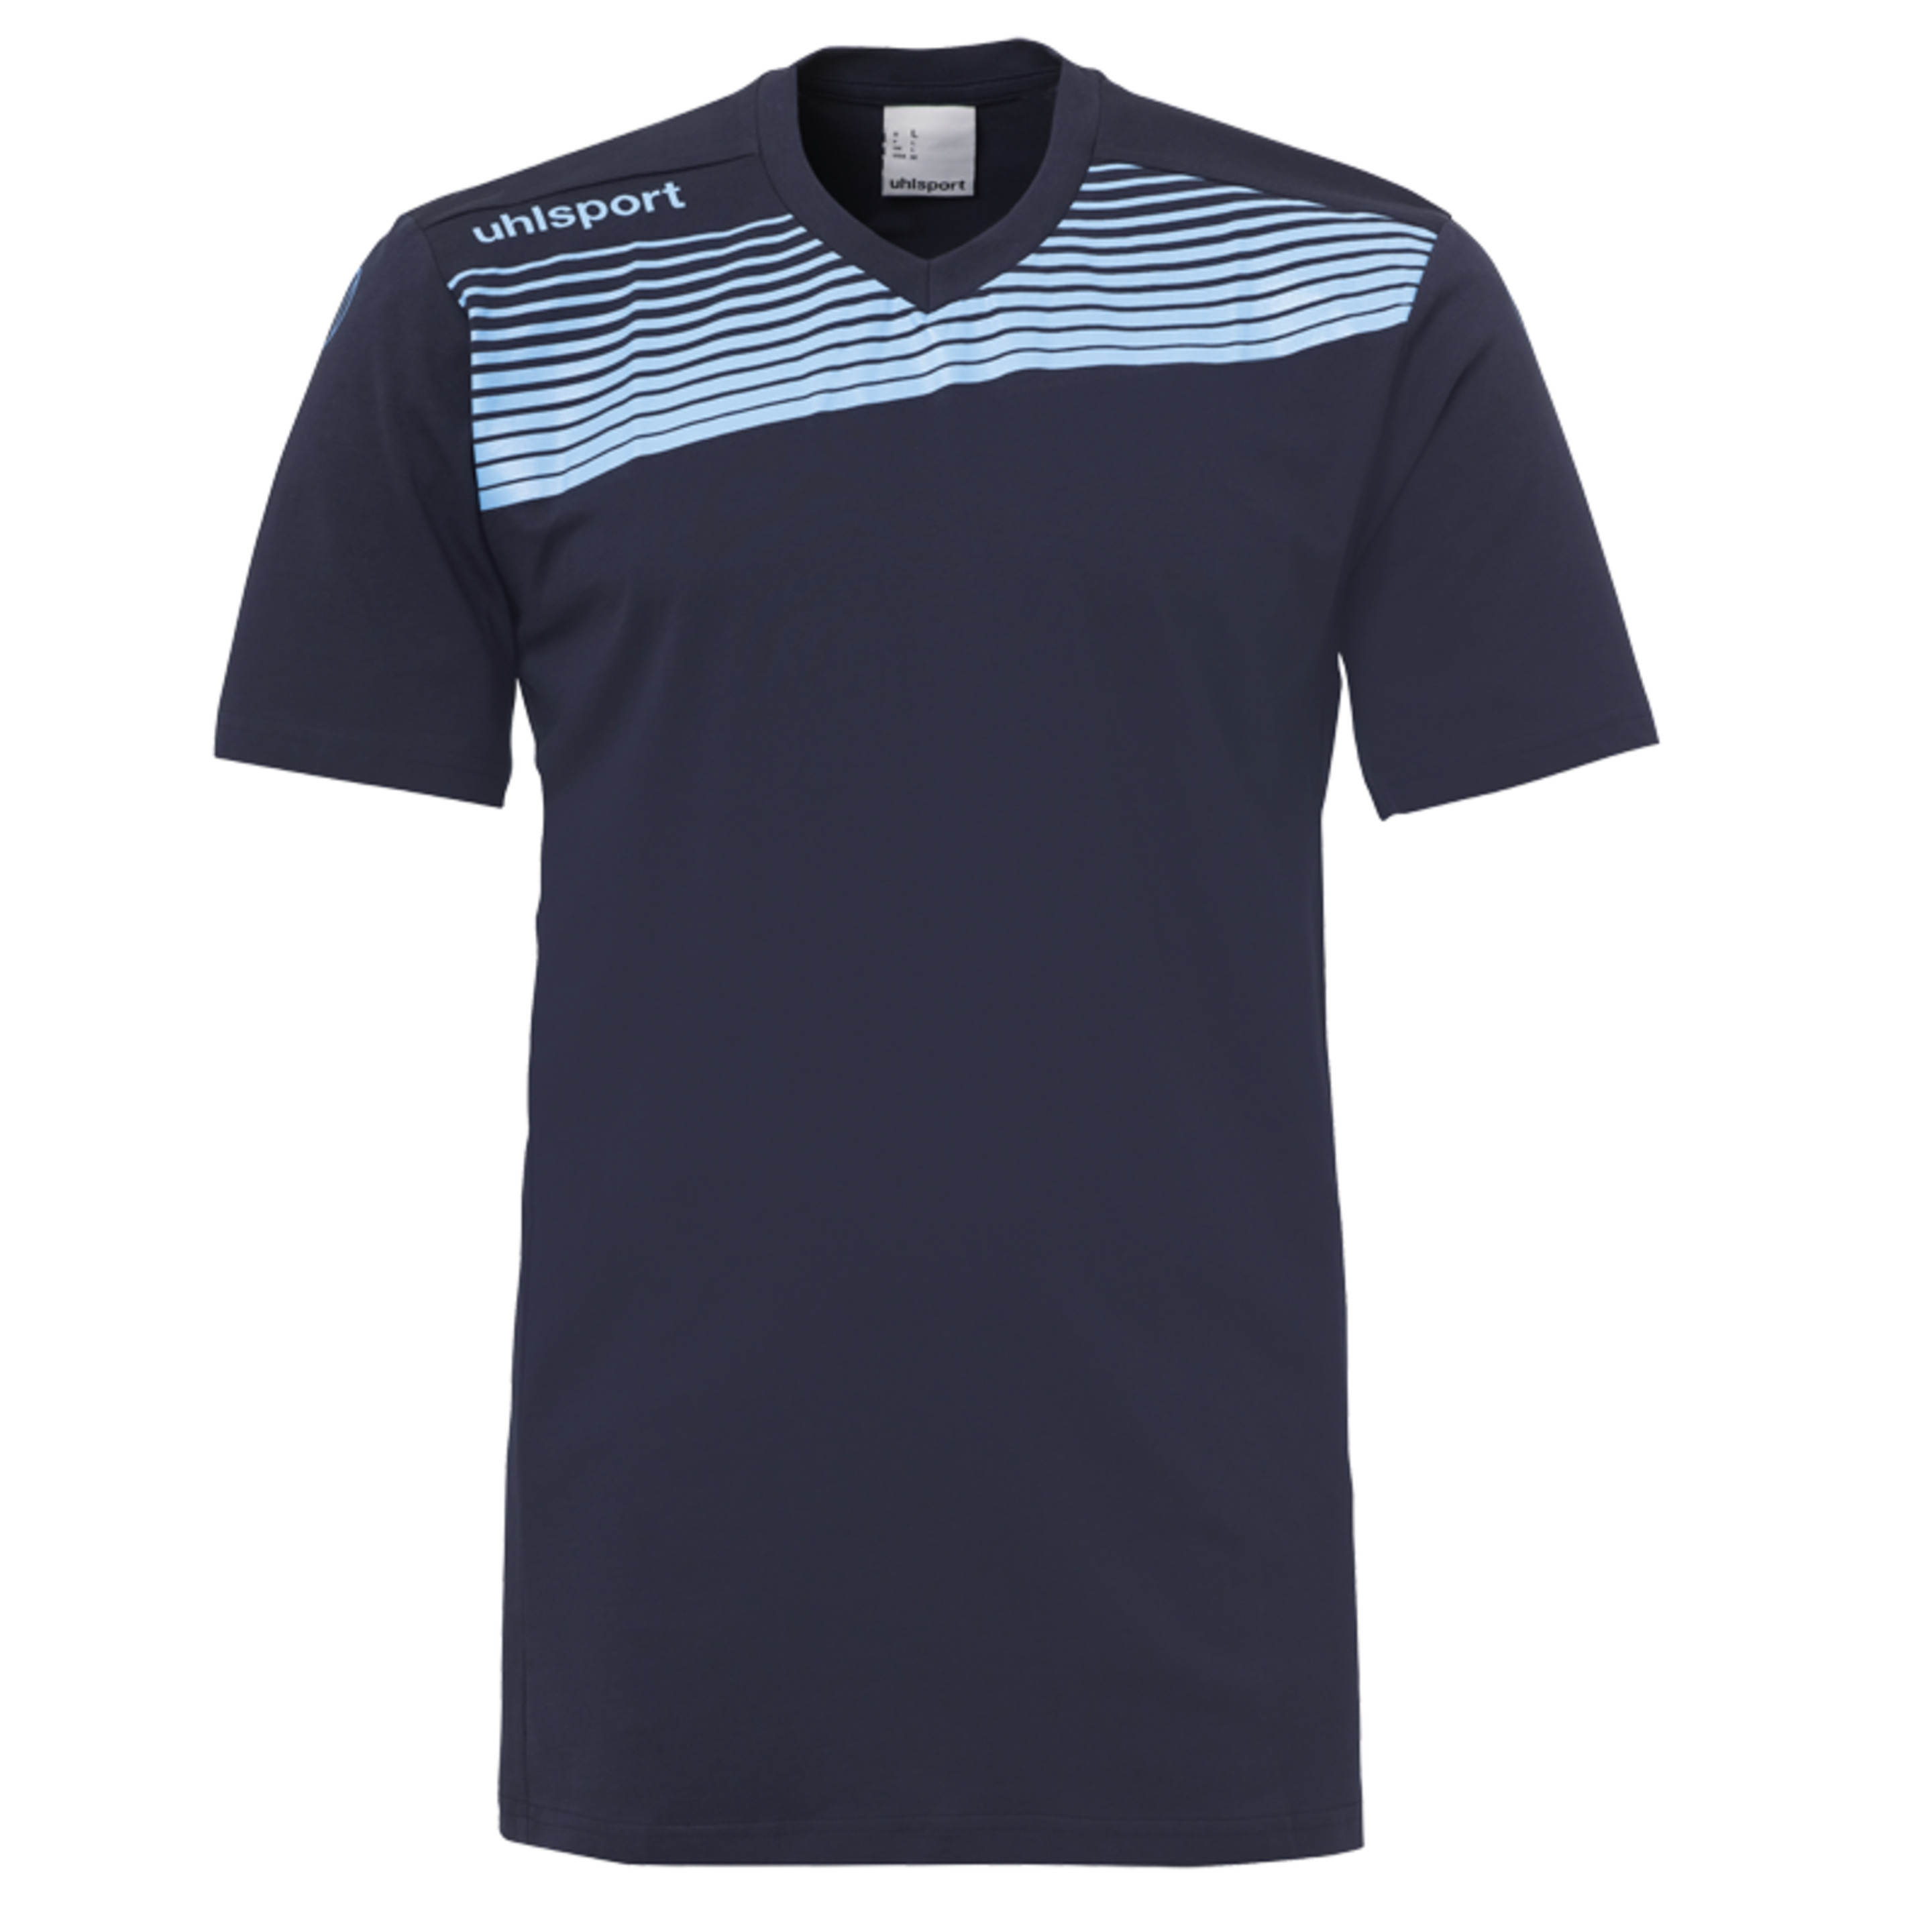 Liga 2.0 Camiseta De Entrenamiento Azul Marino/celeste Uhlsport - azul - Liga 2.0 Camiseta De Entrenamiento Azul Marino/celeste Uhlsport  MKP